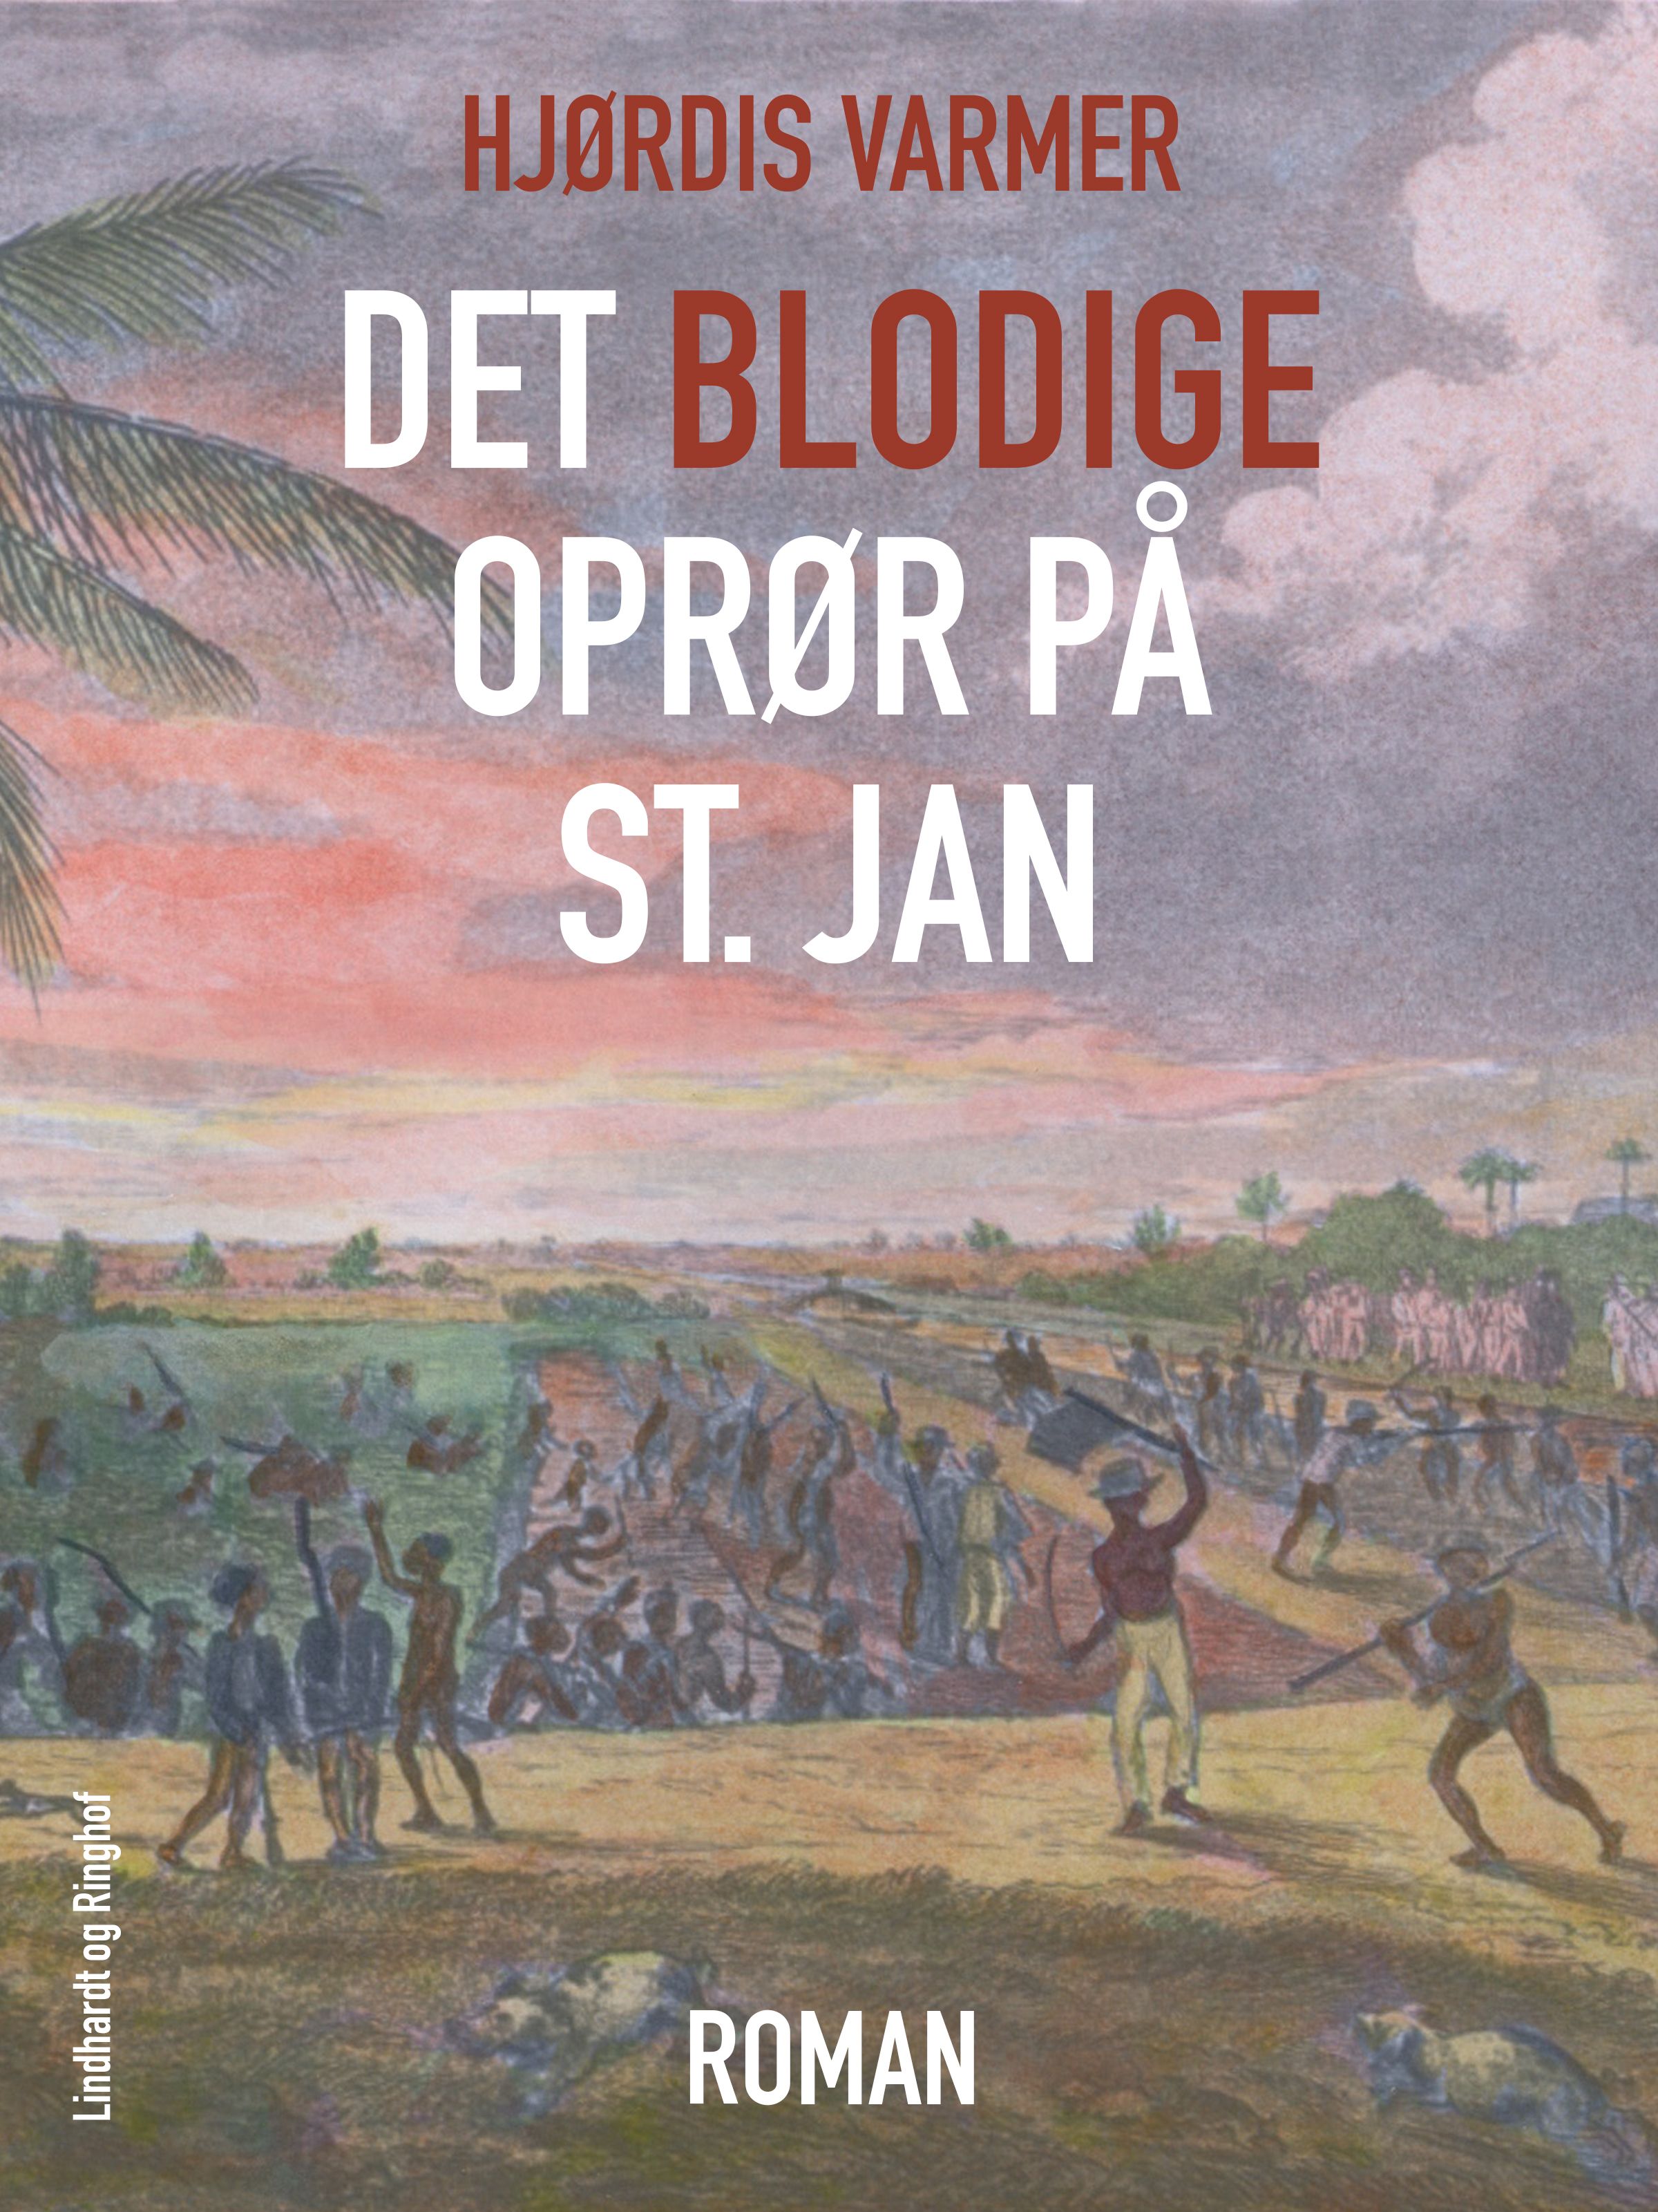 Det blodige oprør på St. Jan, ljudbok av Hjørdis Varmer